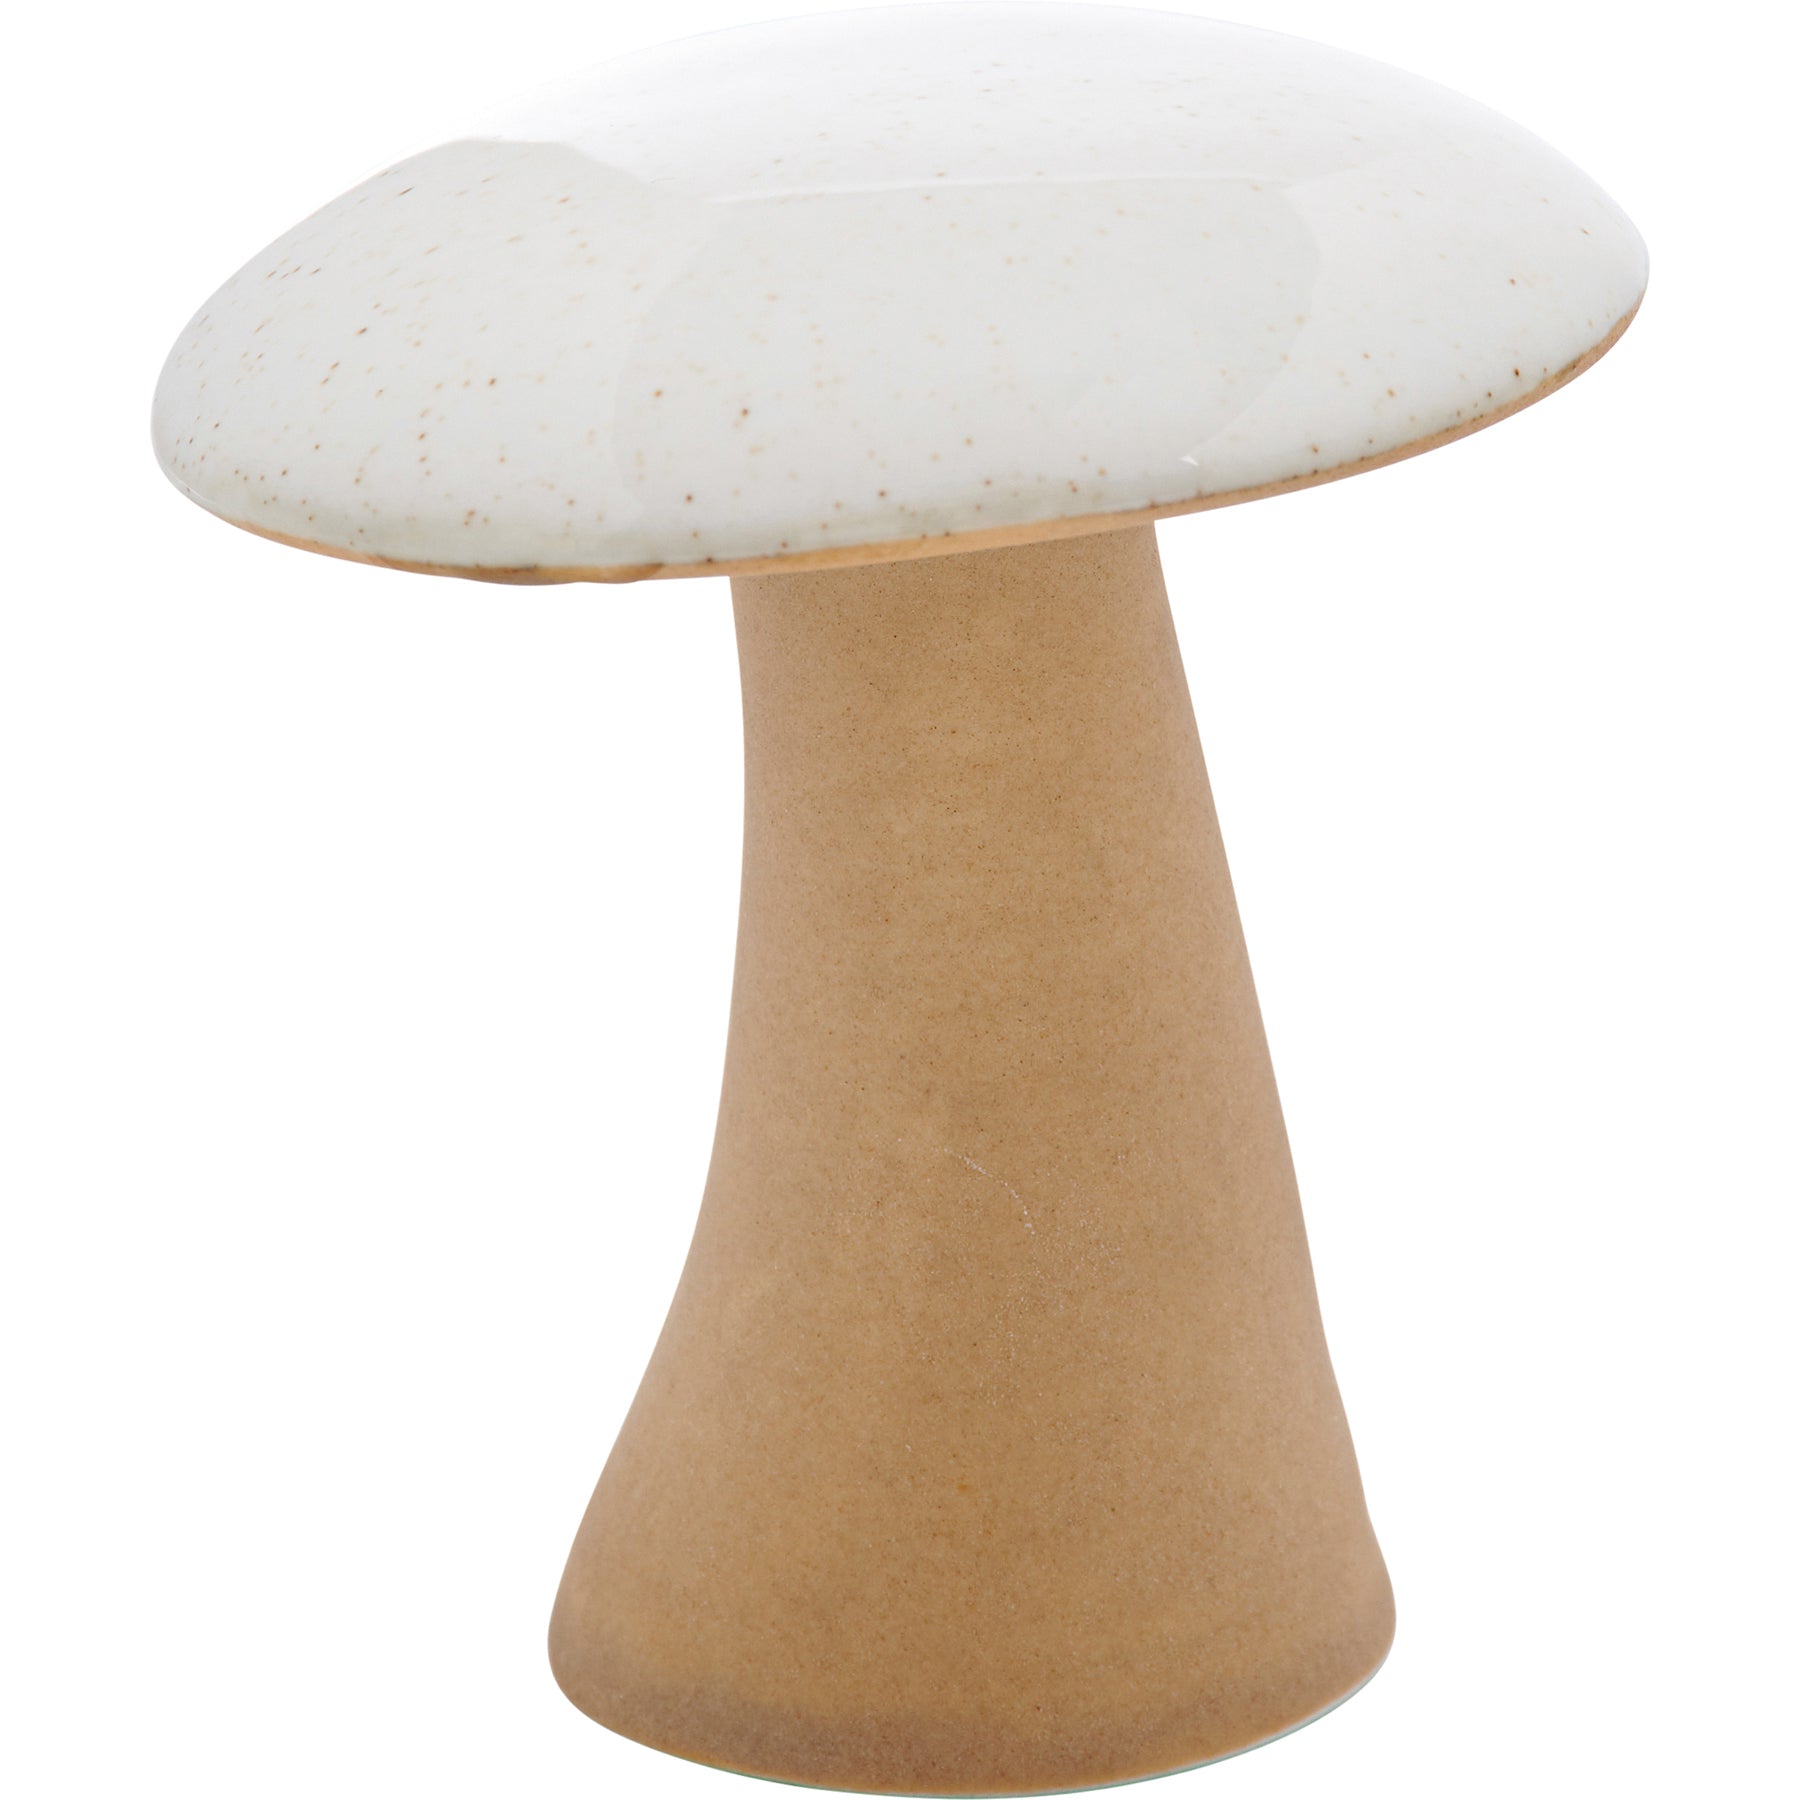 medium wild mushroom figurine on a white background